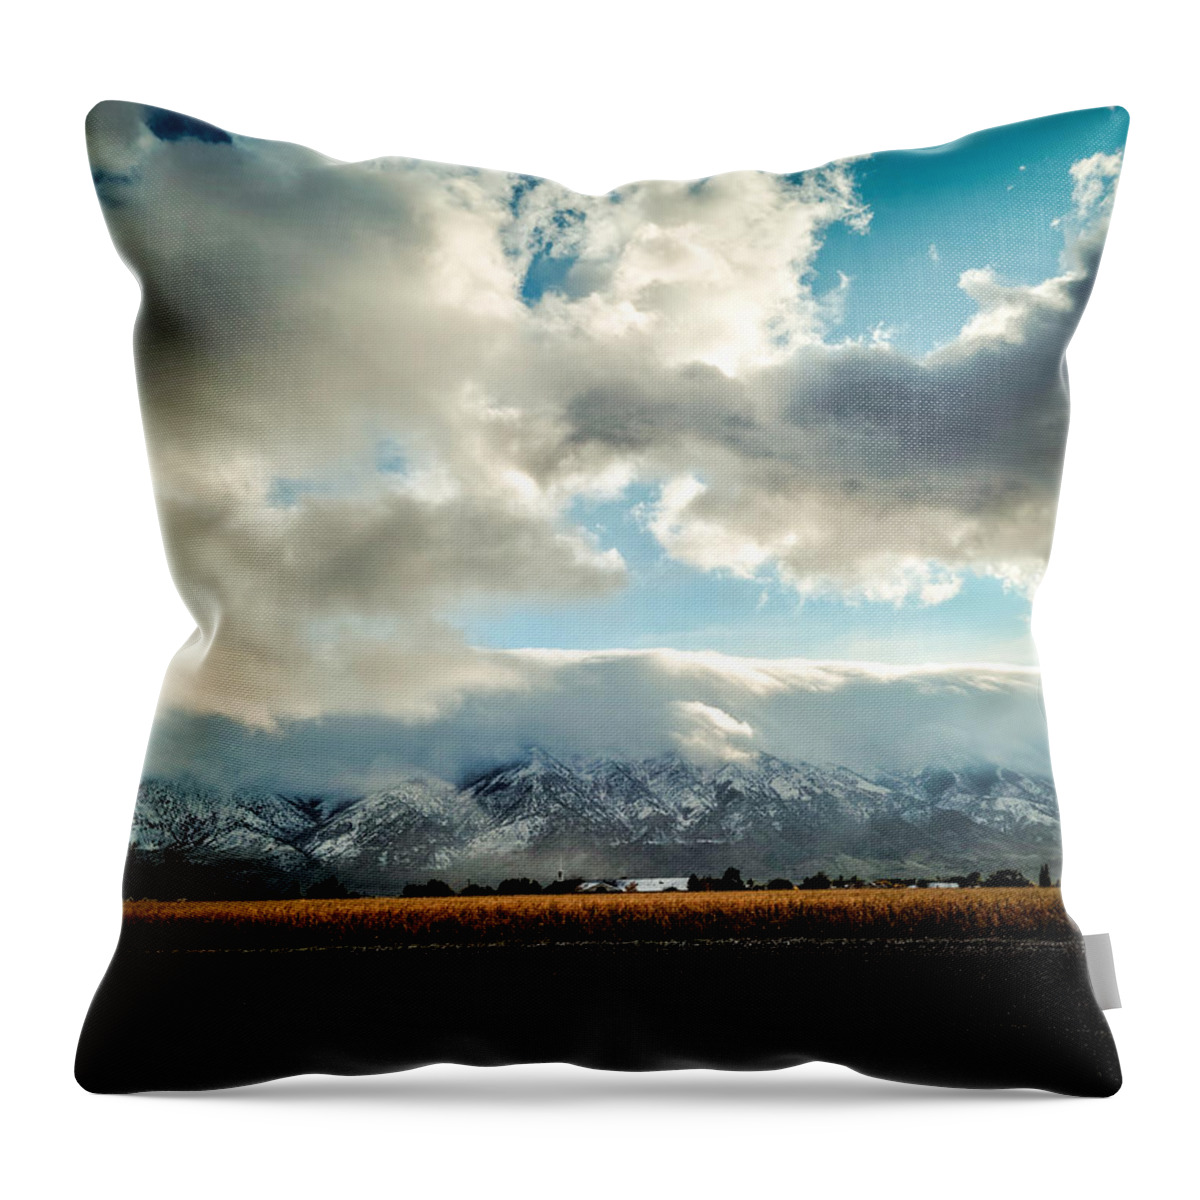 Landscape Throw Pillow featuring the photograph Golden Fields by Carmen Kern